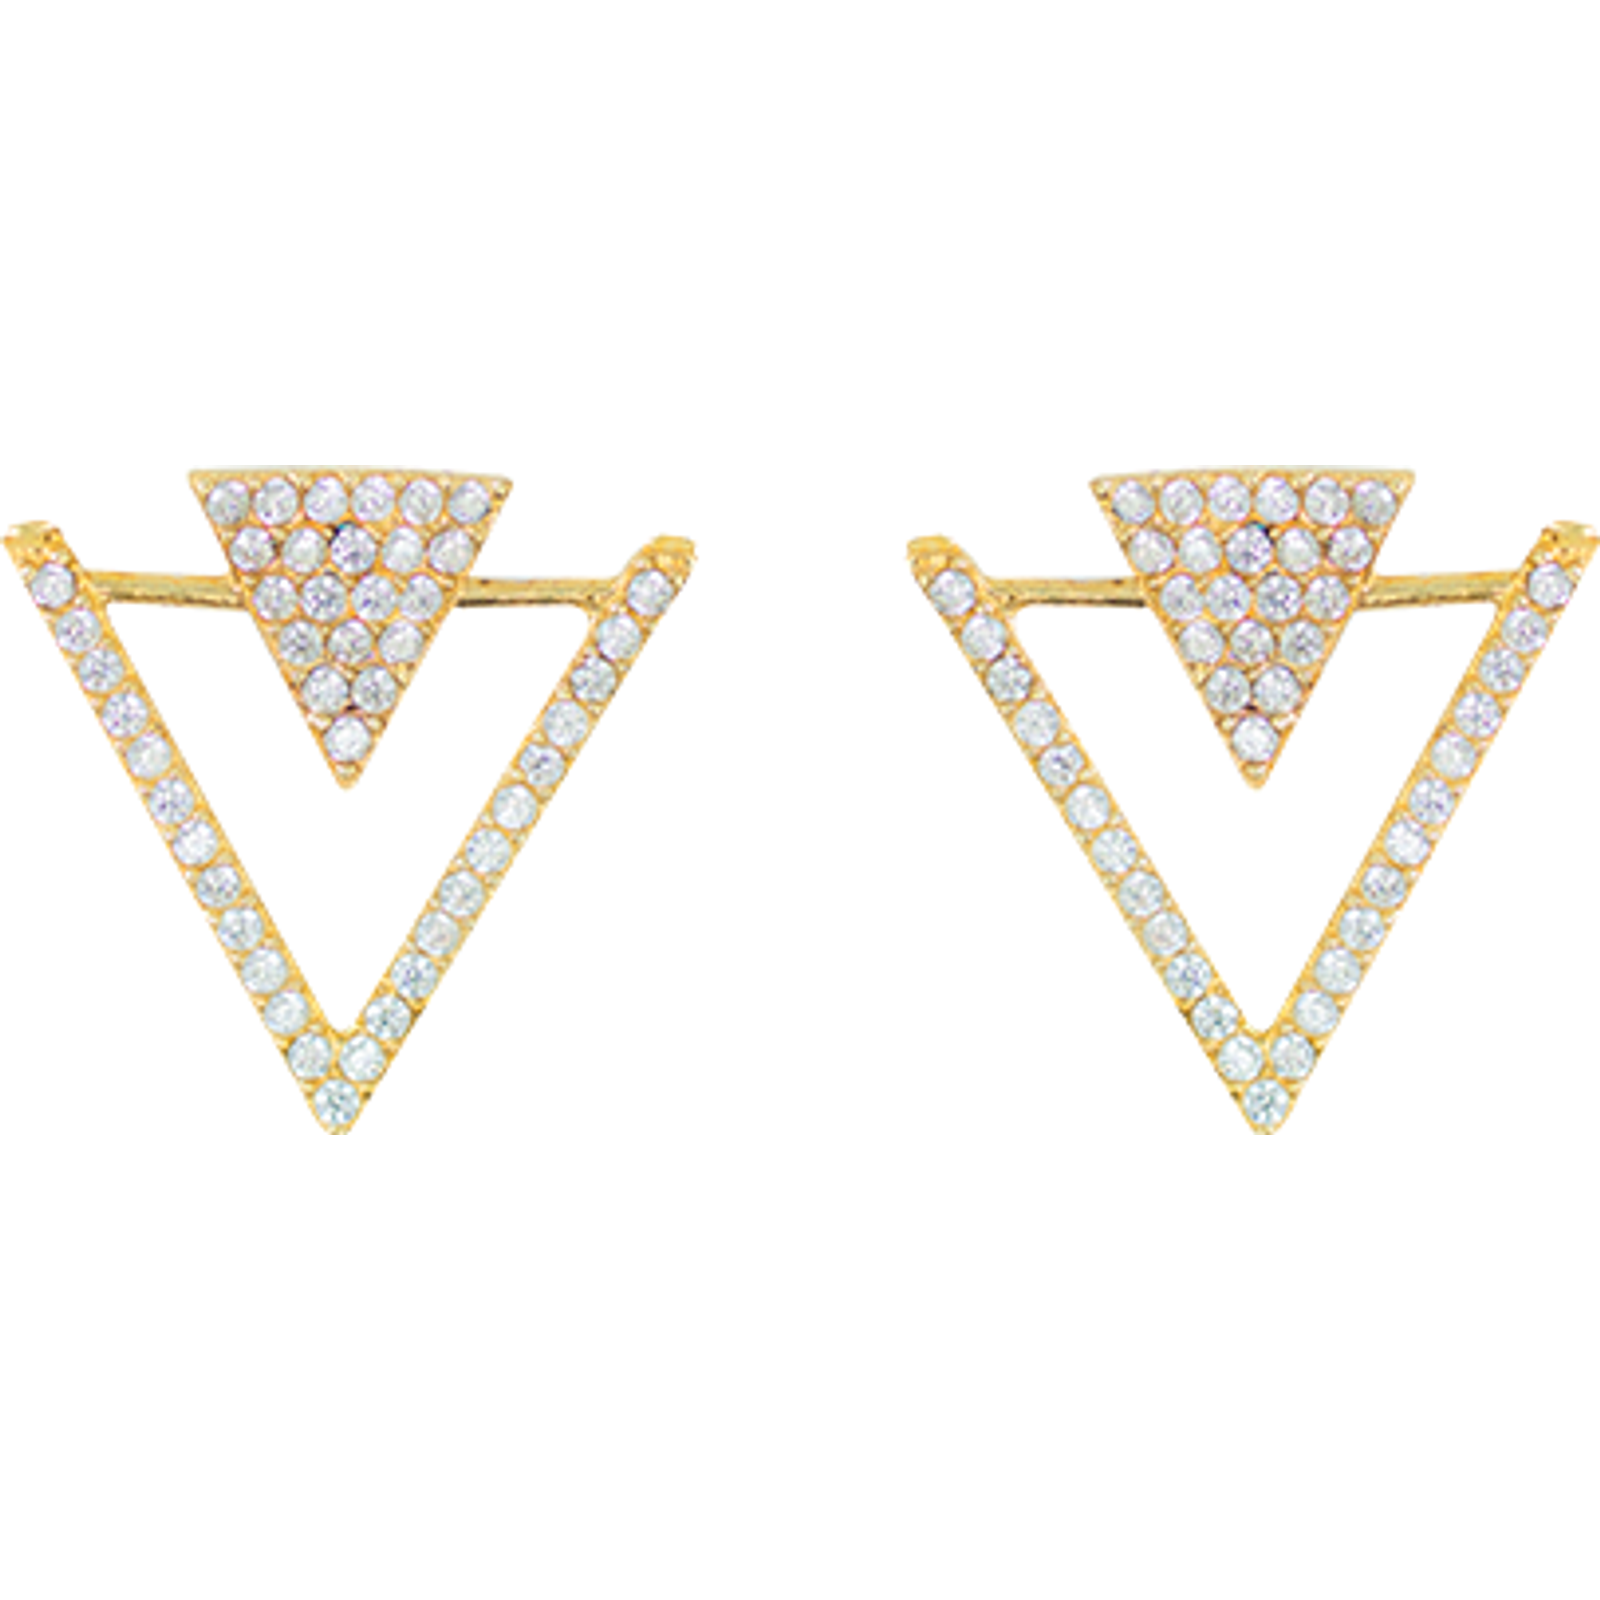 Earrings Triángulos Dorados Zirconia Blanca